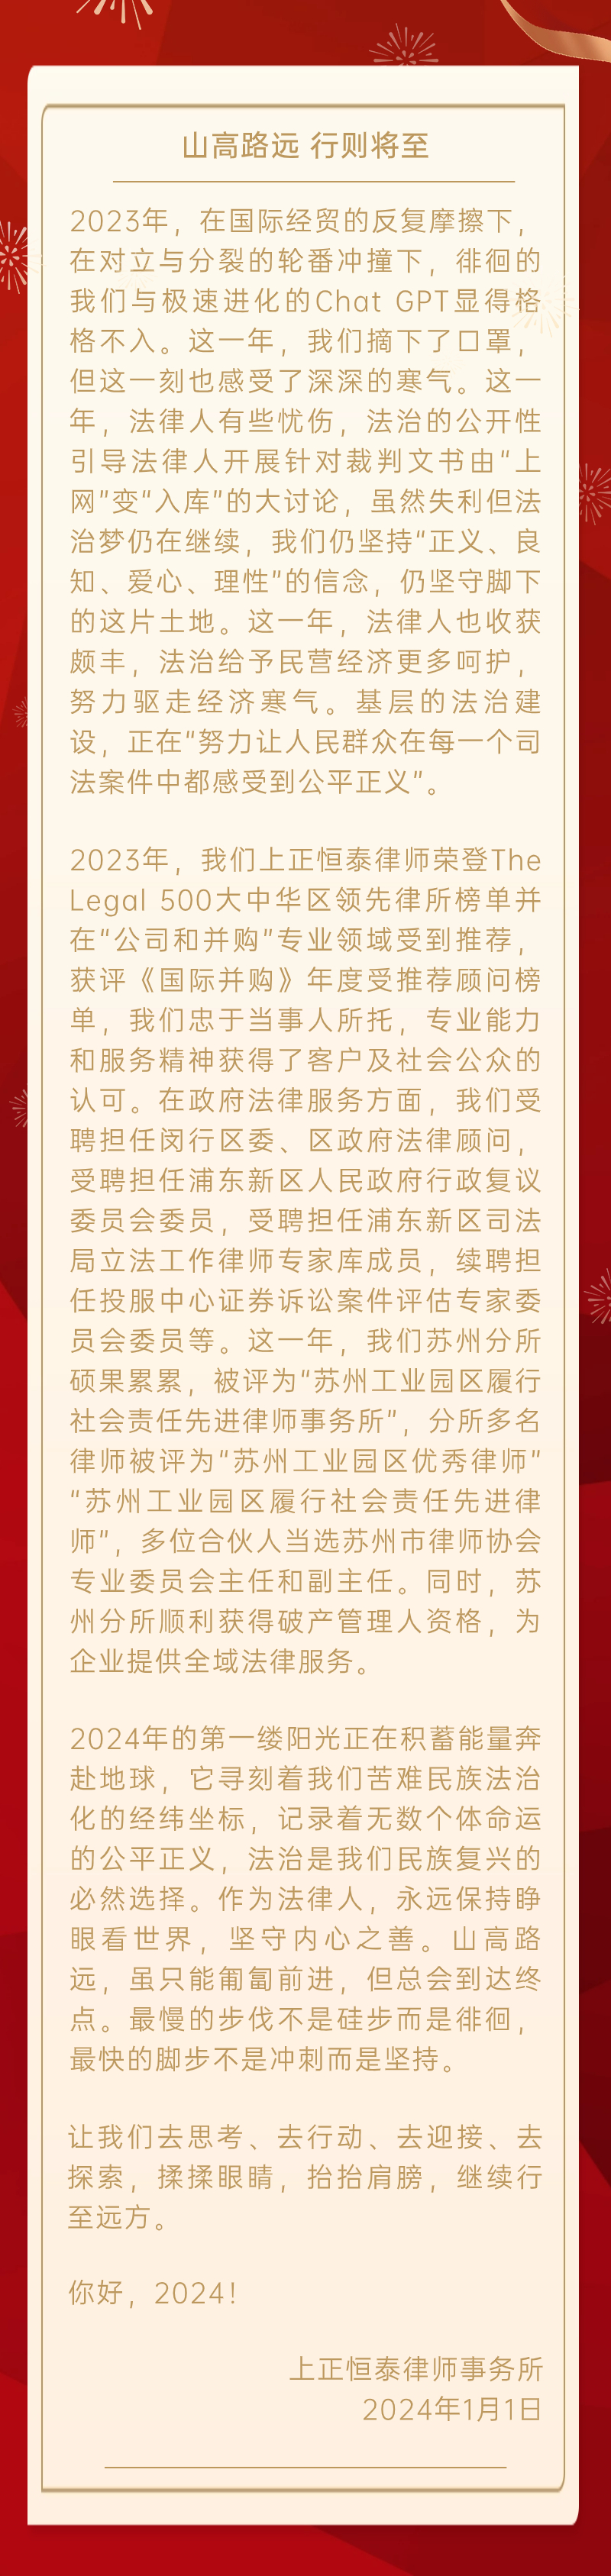 龙年春节新年祝福贺卡长图海报(1) (3).jpg